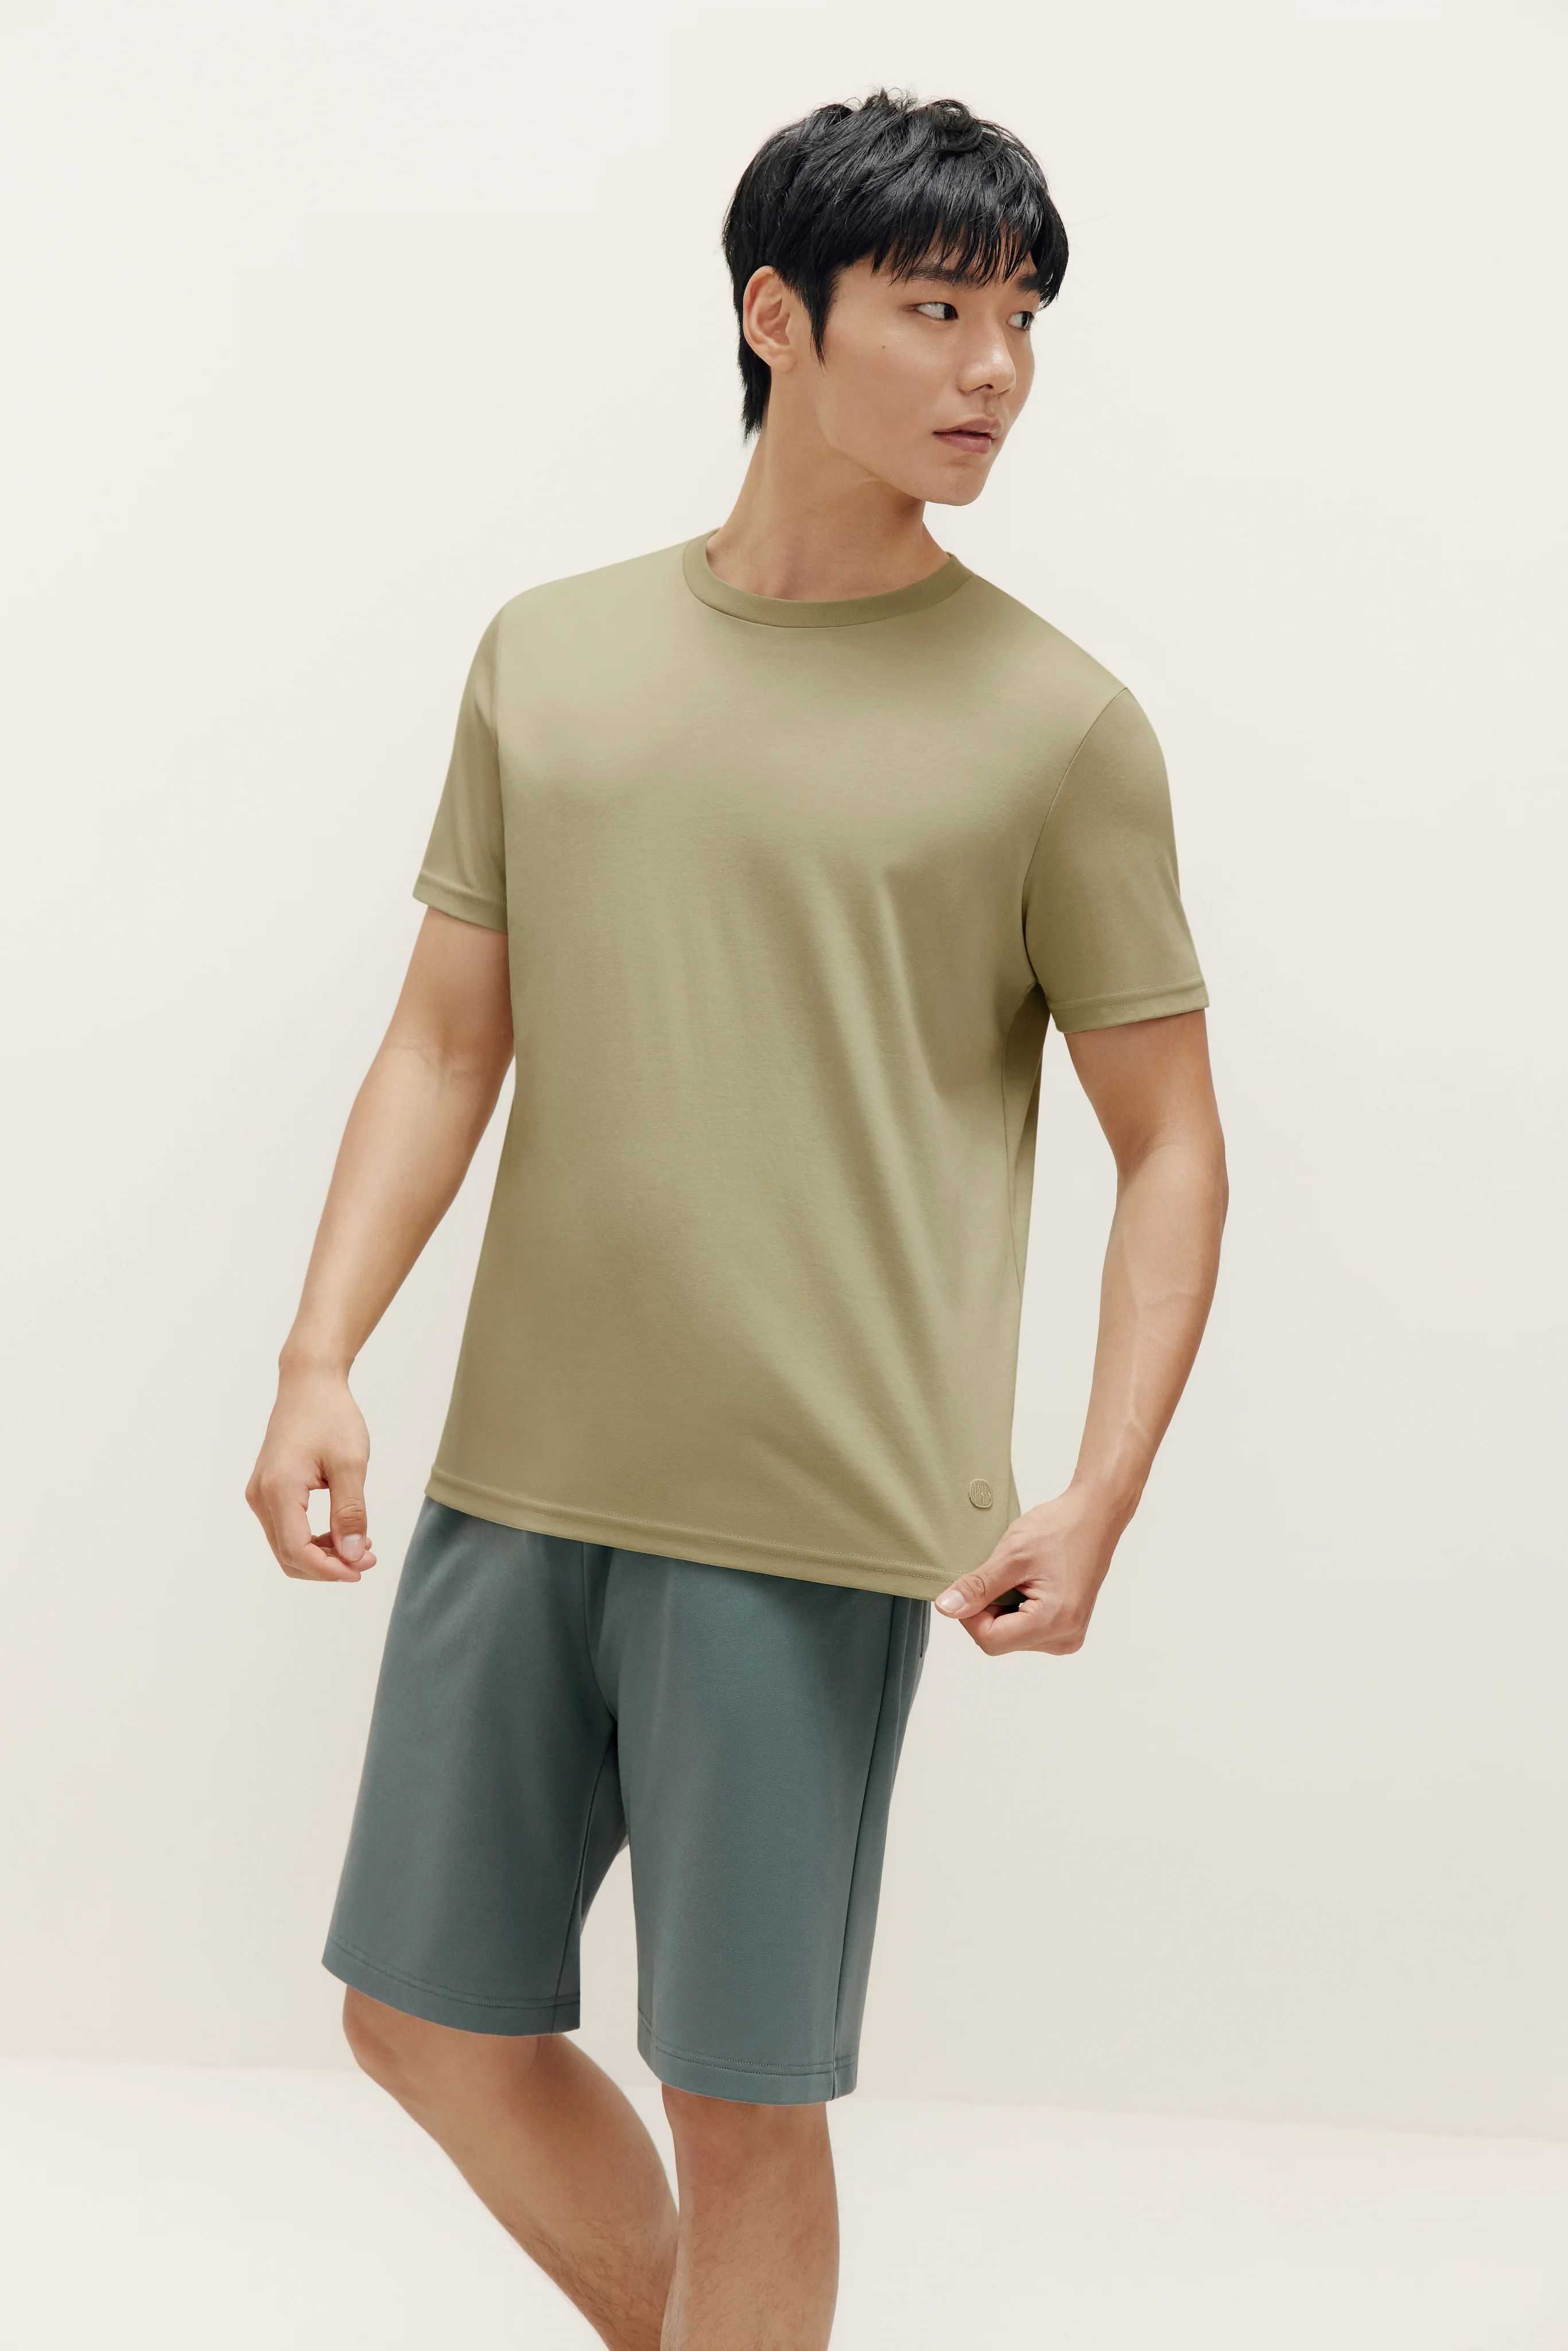 Men's Basic Short Sleeved T-Shirt | NEIWAI